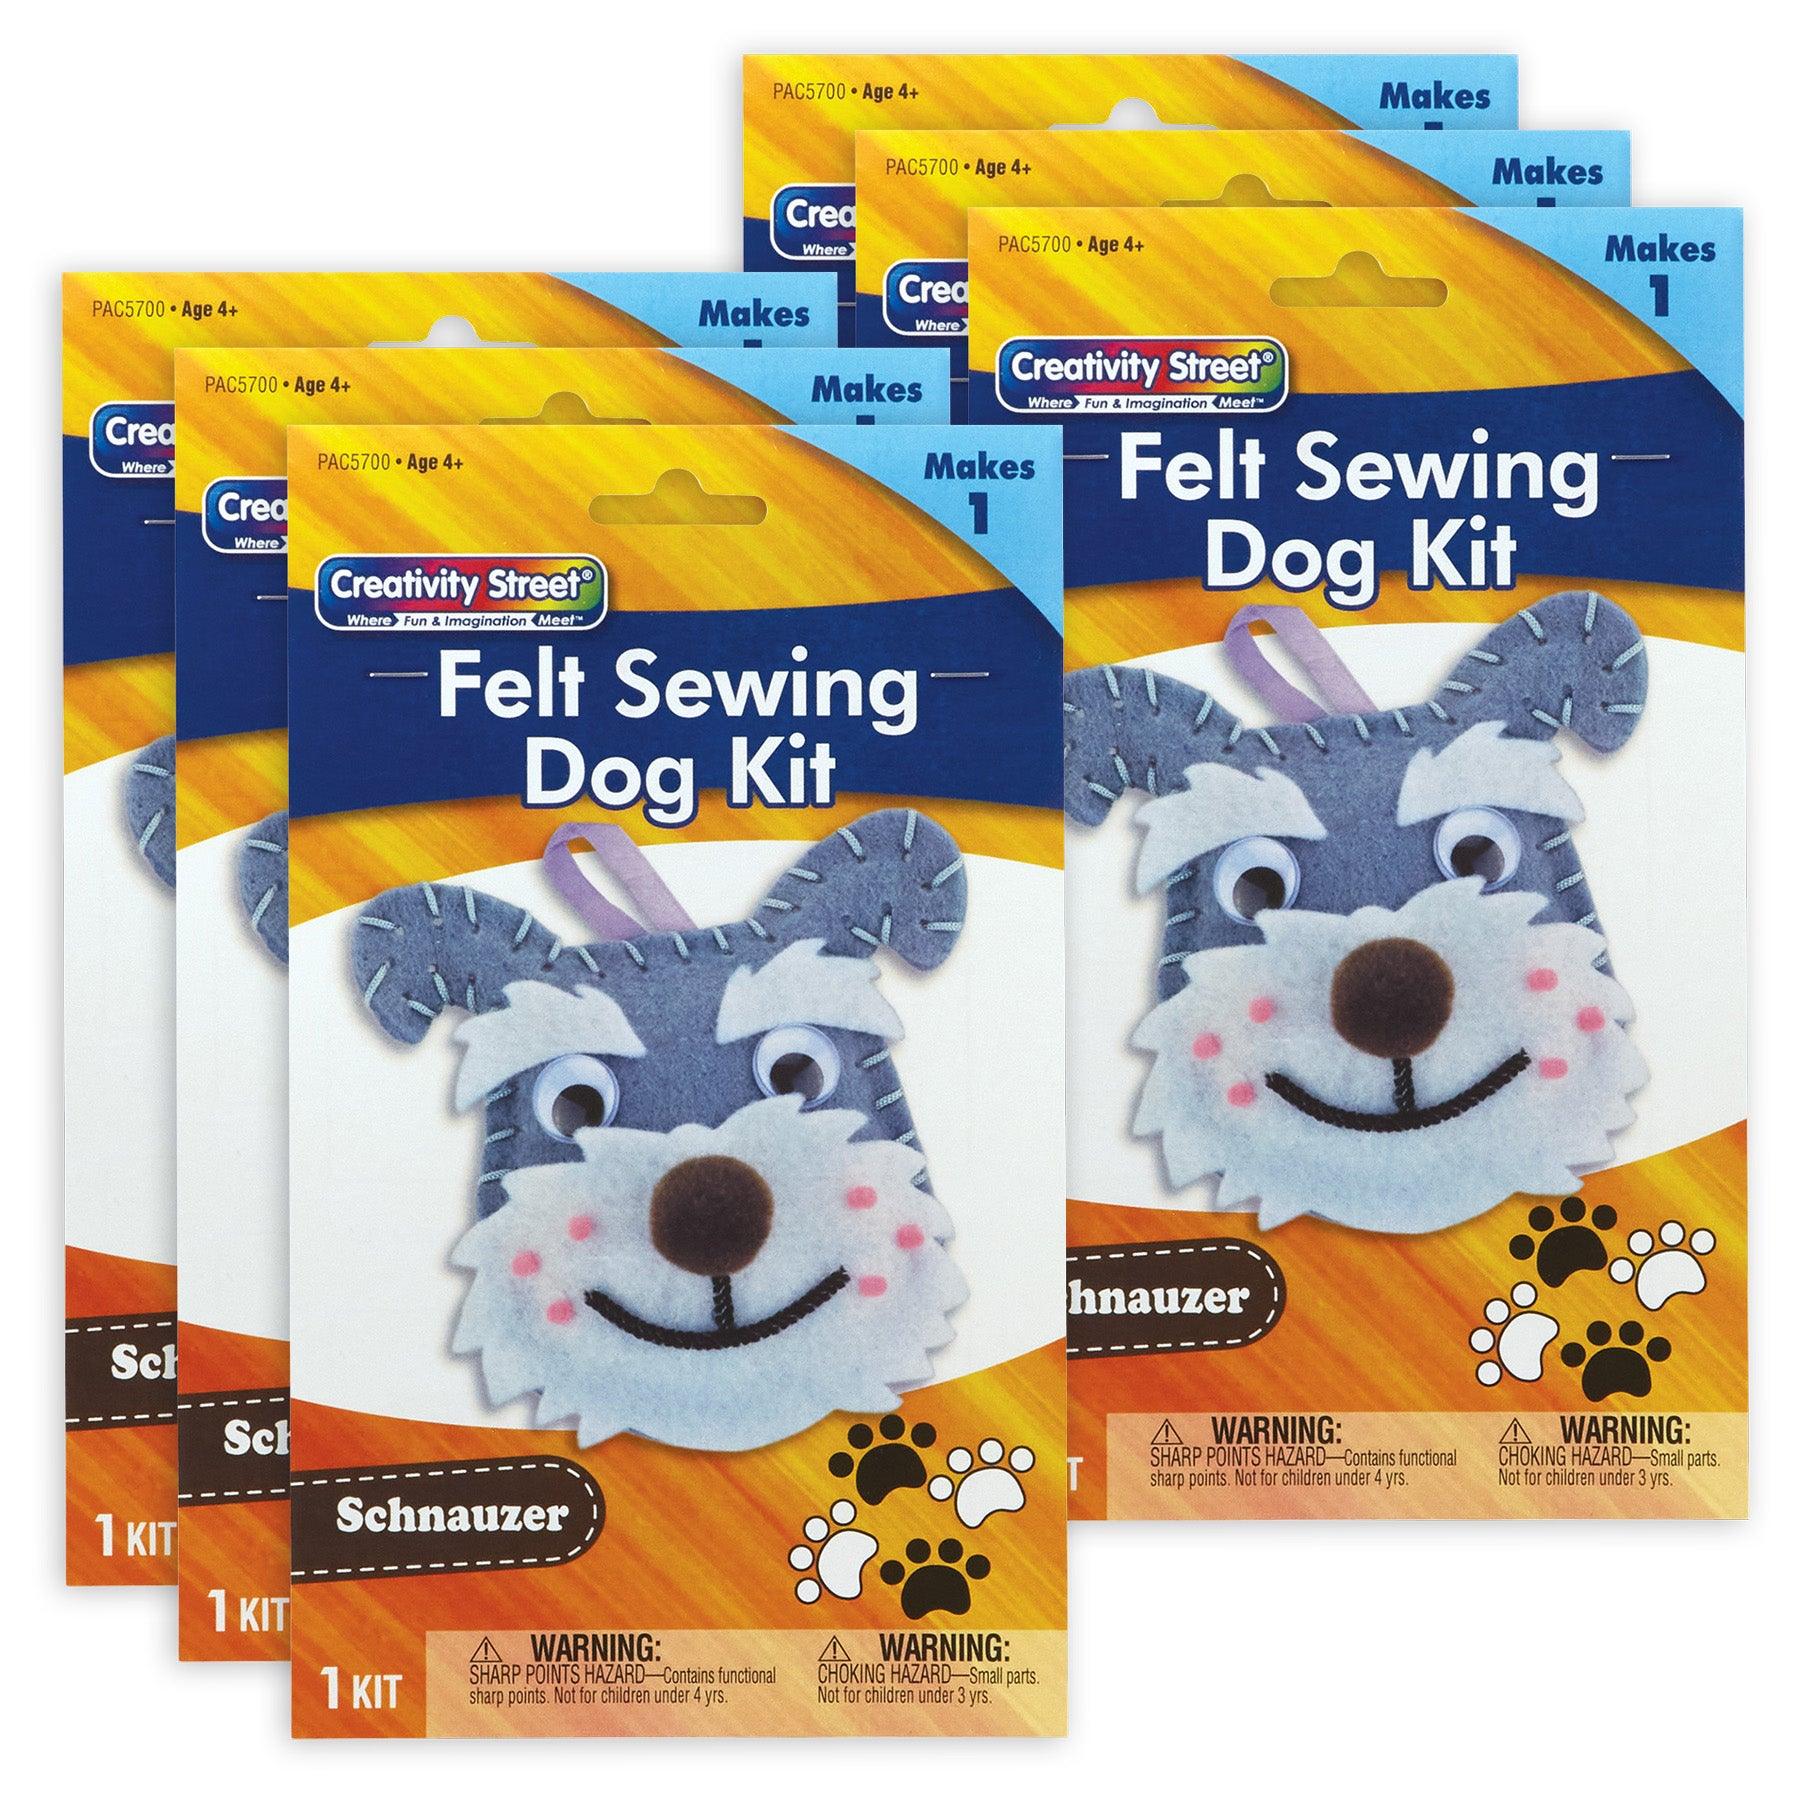 Felt Sewing Dog Kit, Schnauzer, 4.25" x 6.5" x 1", 6 Kits - Loomini